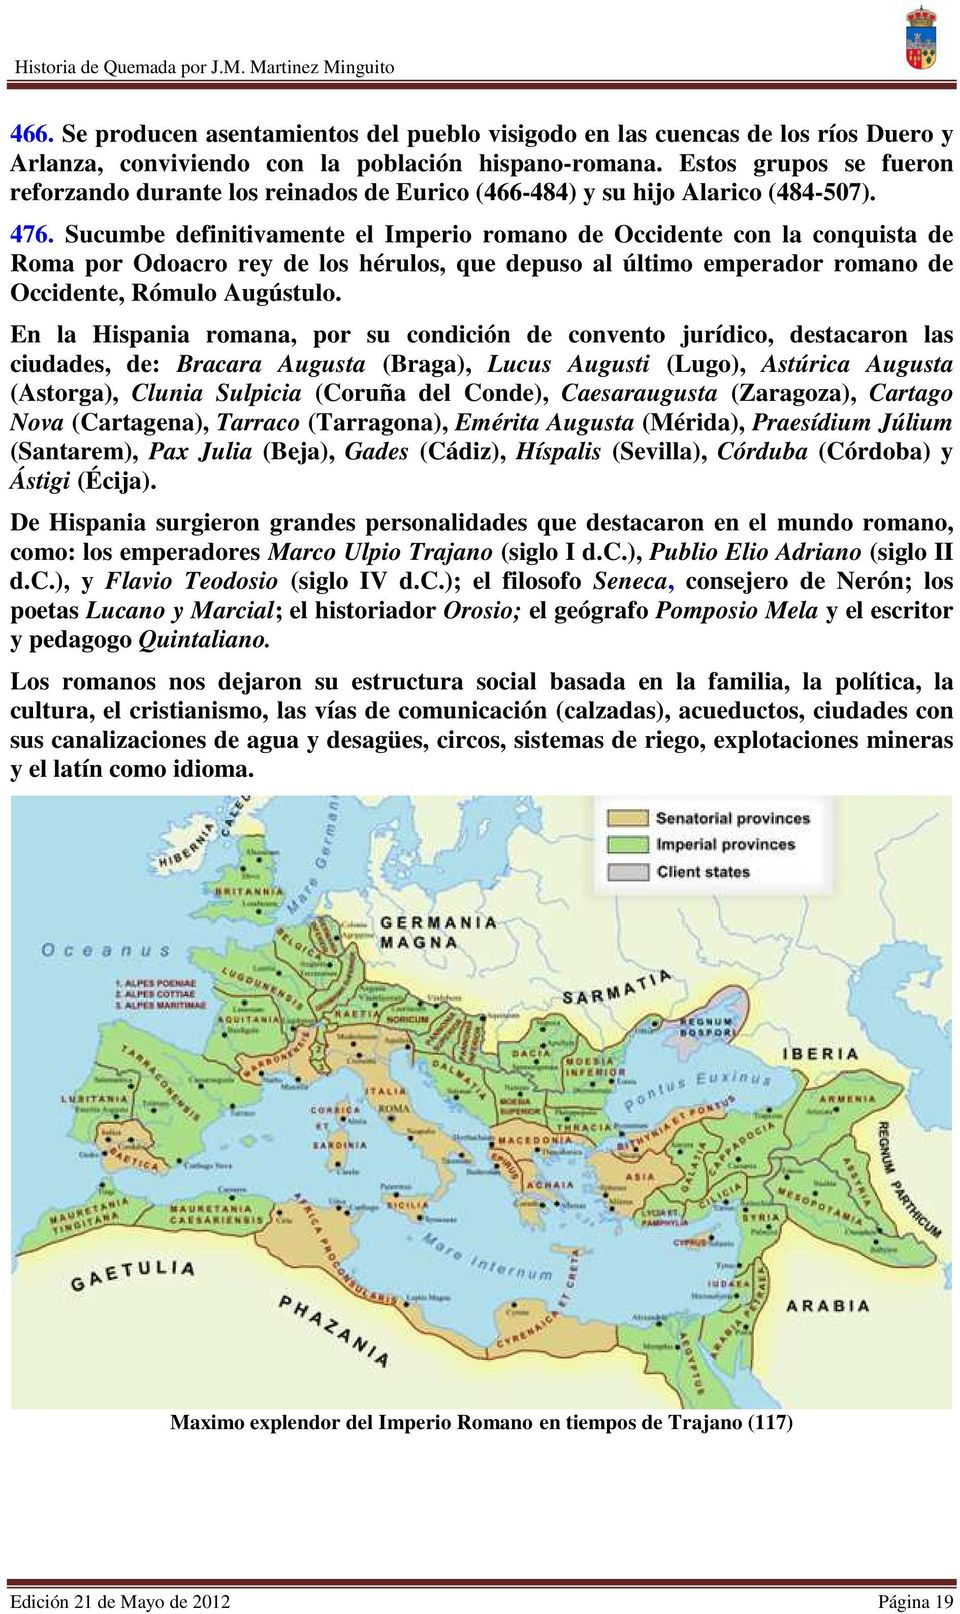 Sucumbe definitivamente el Imperio romano de Occidente con la conquista de Roma por Odoacro rey de los hérulos, que depuso al último emperador romano de Occidente, Rómulo Augústulo.